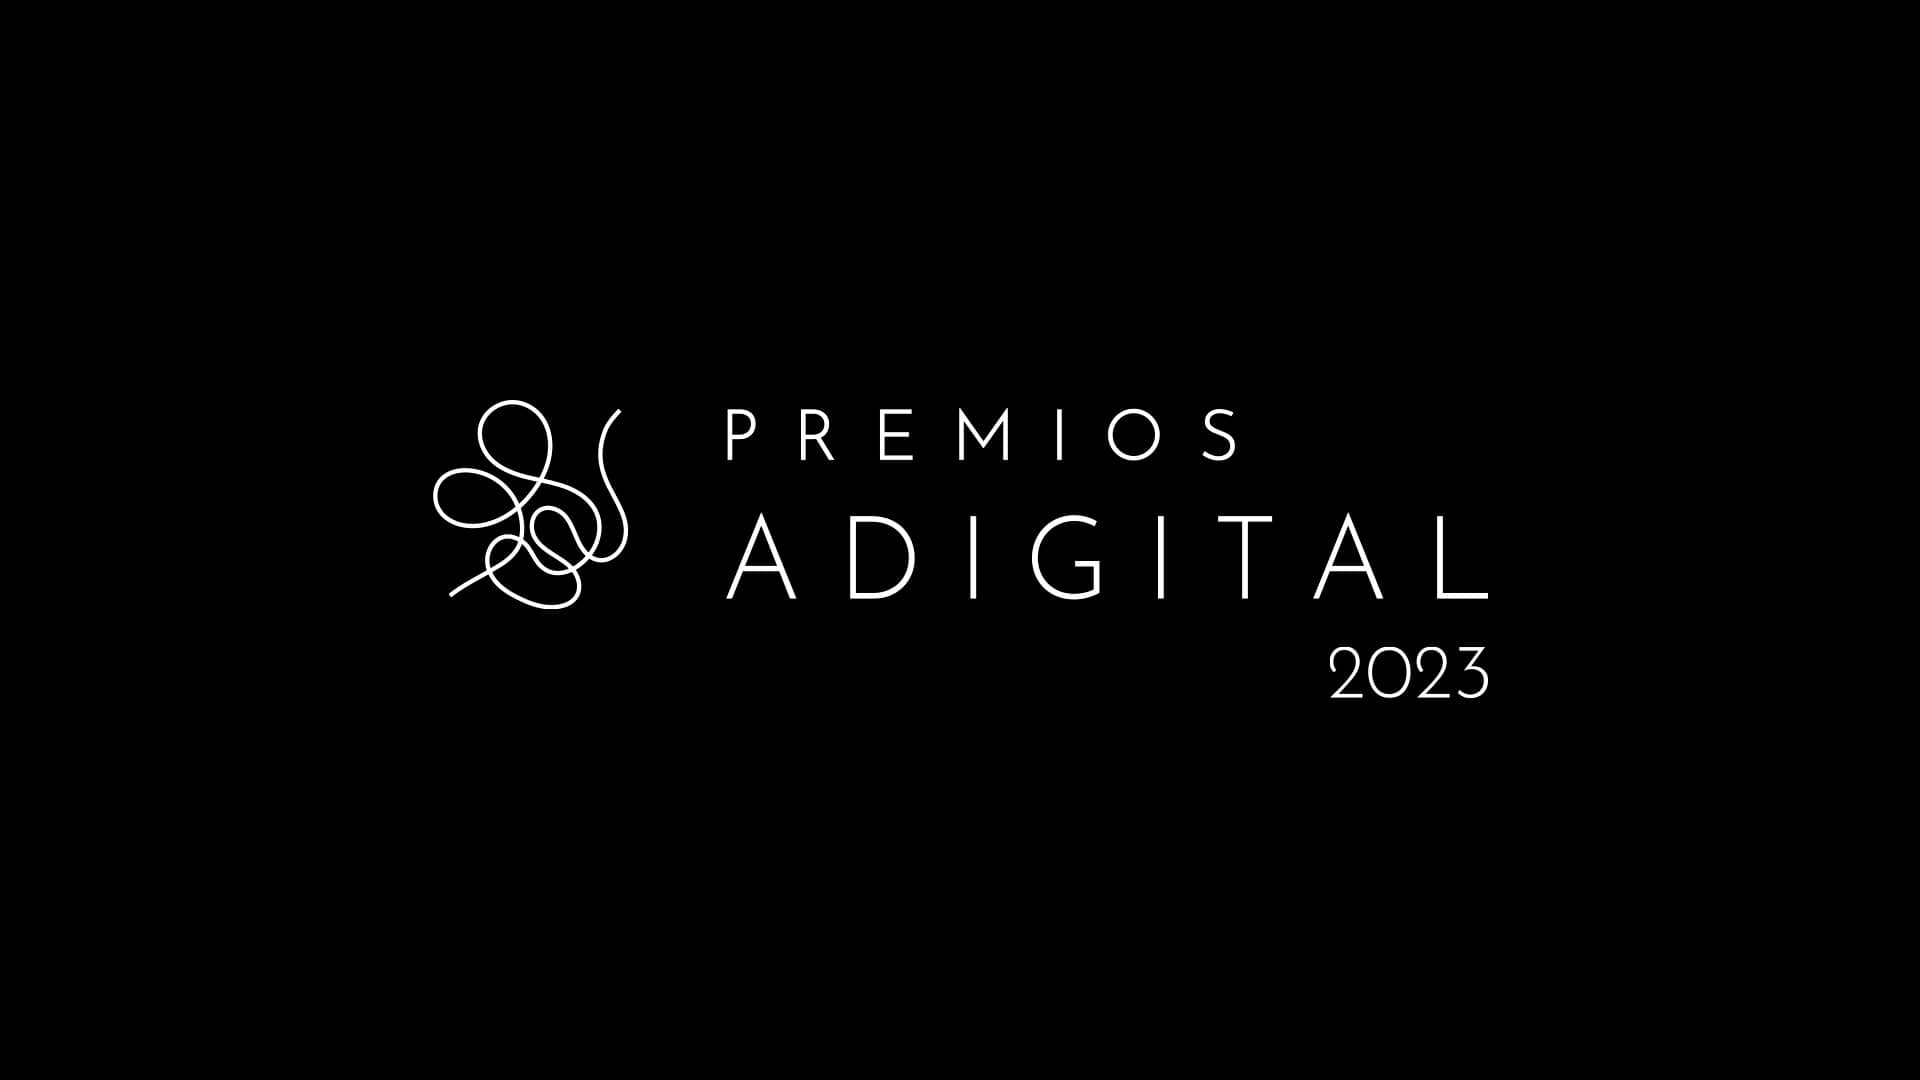 Adigital abre las candidaturas a los Premios Adigital 2023 con el objetivo de reconocer la digitalización dirigida a mejorar la sociedad